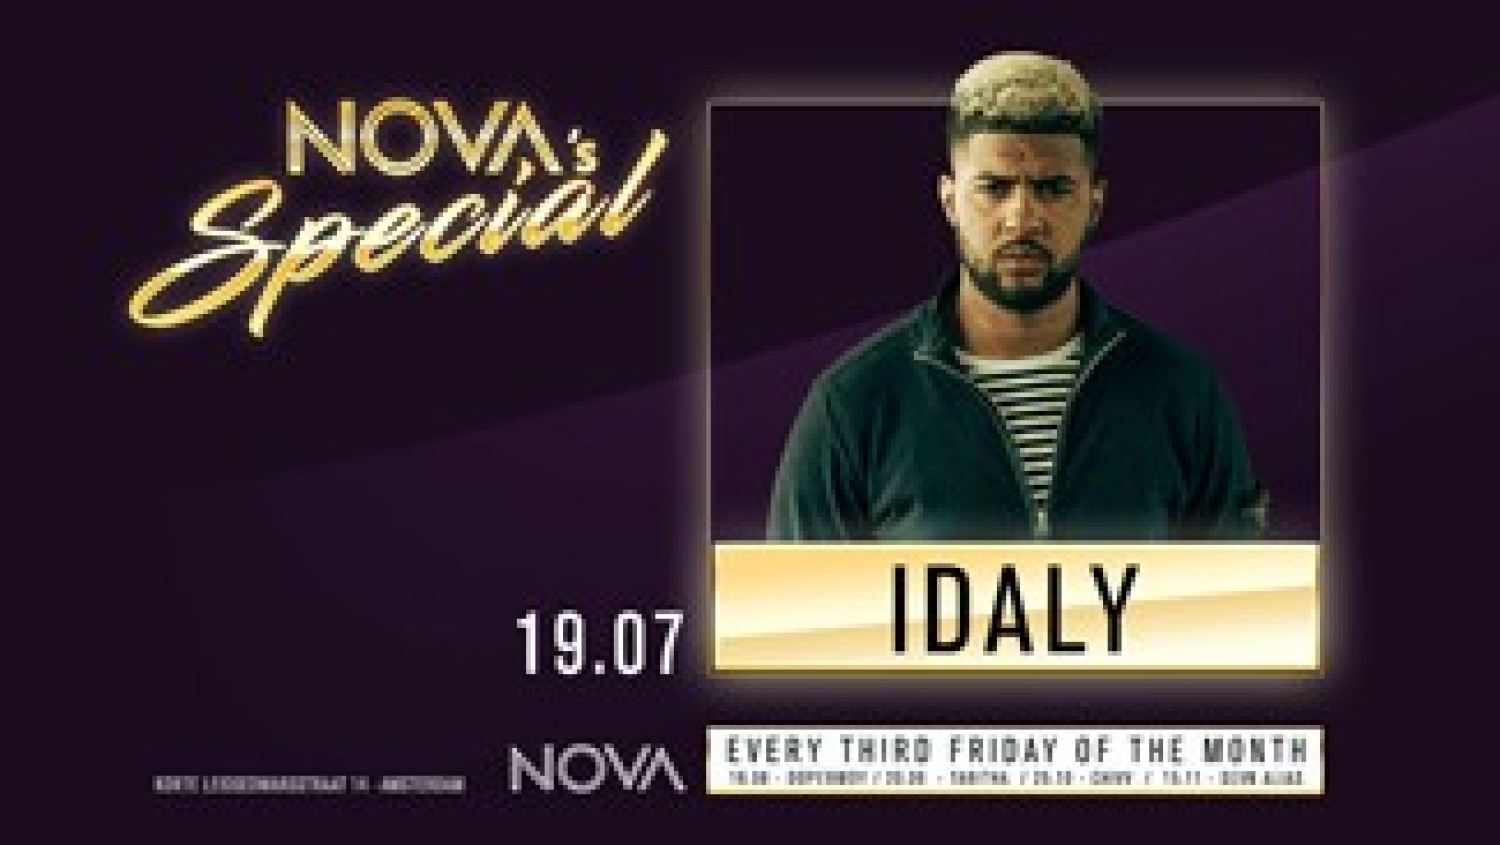 Party nieuws: Nova's Special terug op vrijdag 19 juli met Idaly!